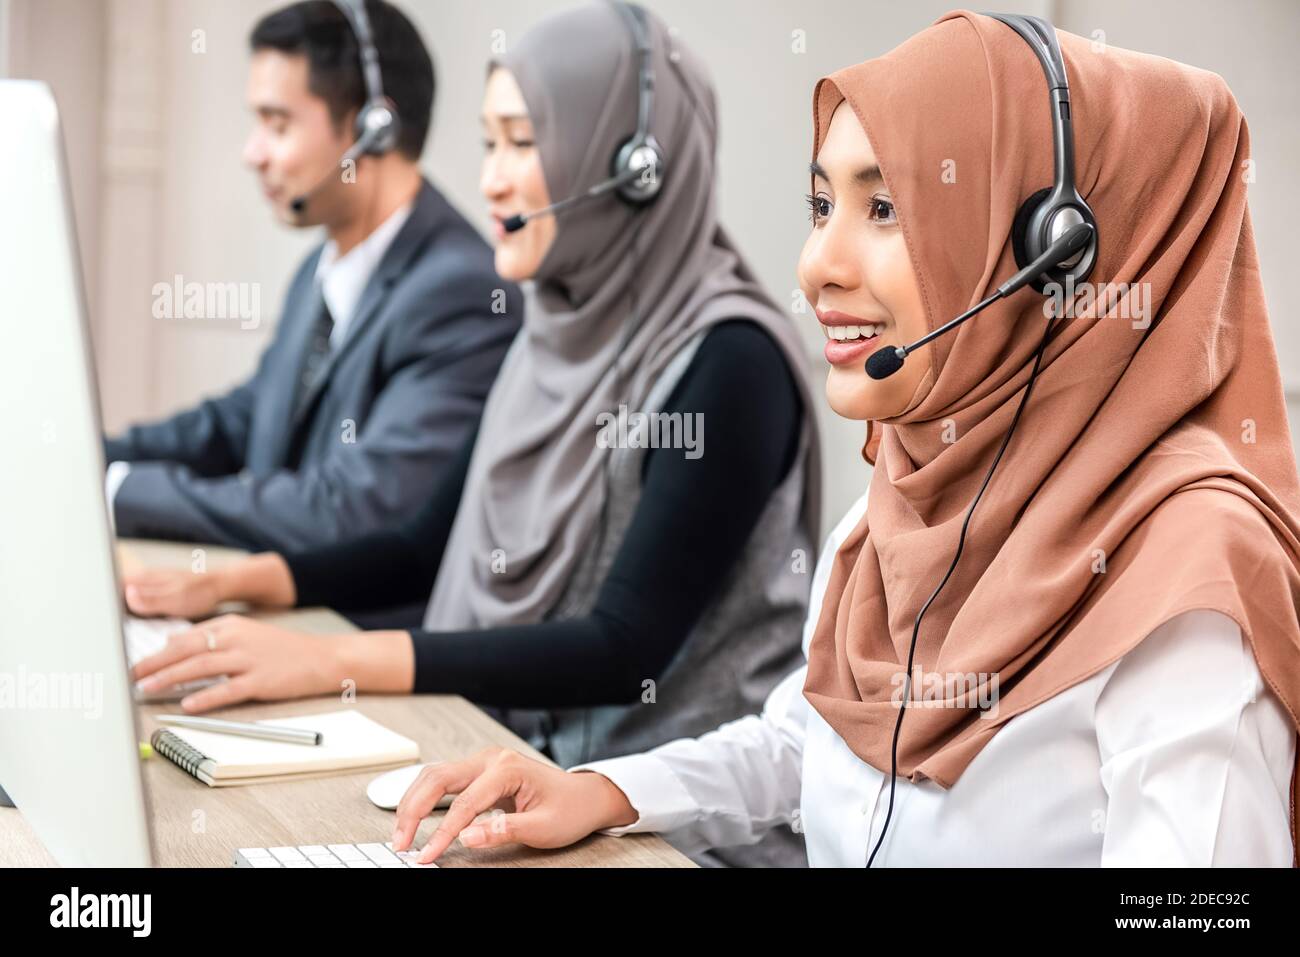 Freundliche schöne asiatische muslimische Frau trägt Mikrofon-Headset arbeiten als Kundendienstmitarbeiter mit Team im Callcenter Stockfoto